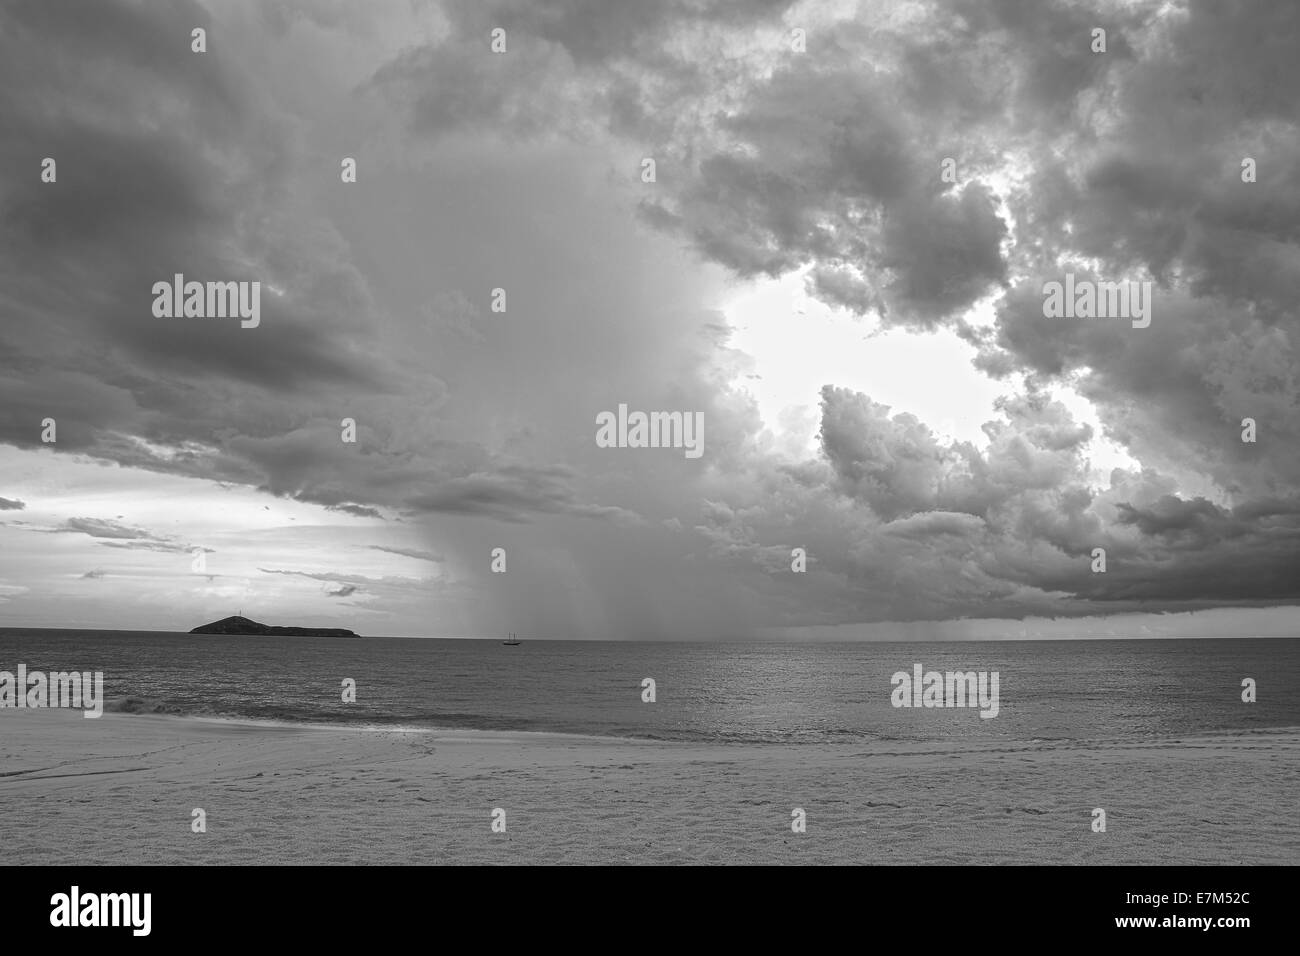 Drammatico cielo tempestoso oltre oceano su una solitaria spiaggia fatto in bianco e nero Foto Stock